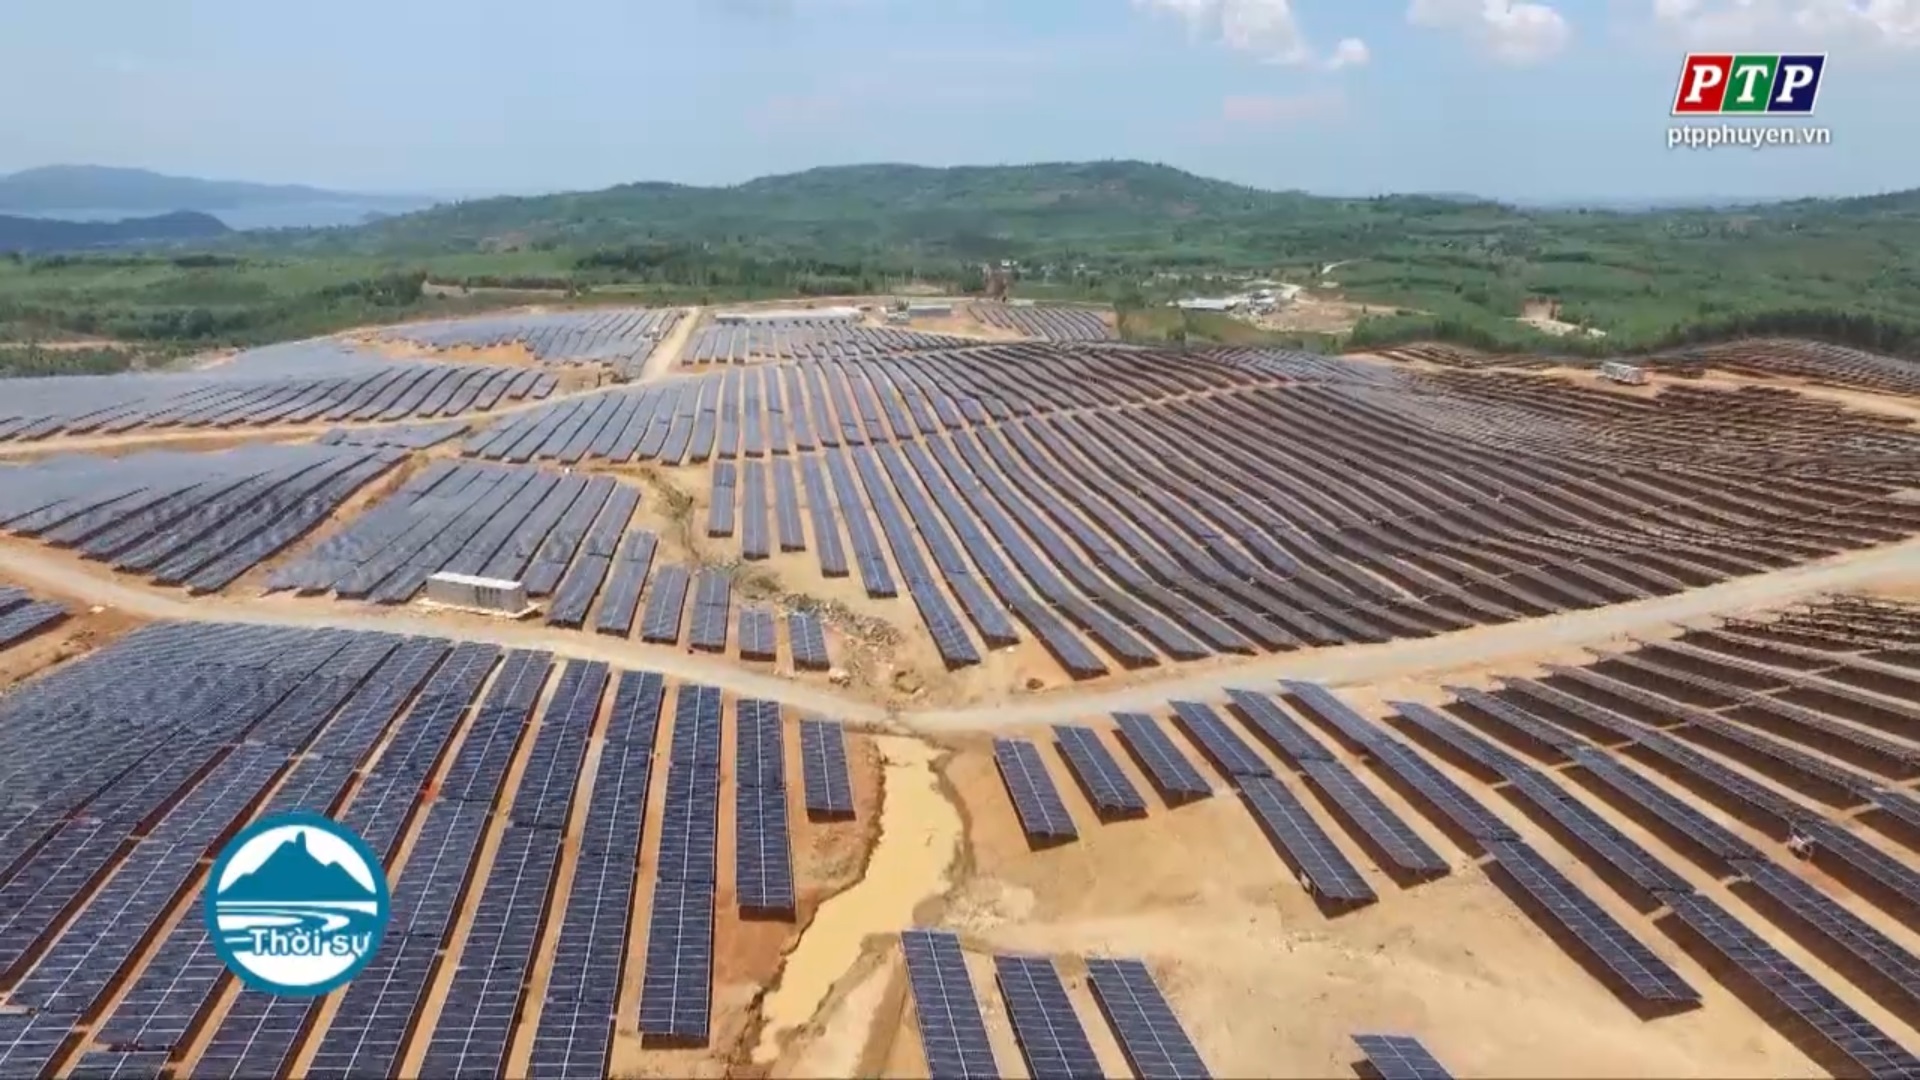 Đầu tư các dự án năng lượng sạch, Phú Yên làm gì để phát huy tiềm năng, lợi thế?